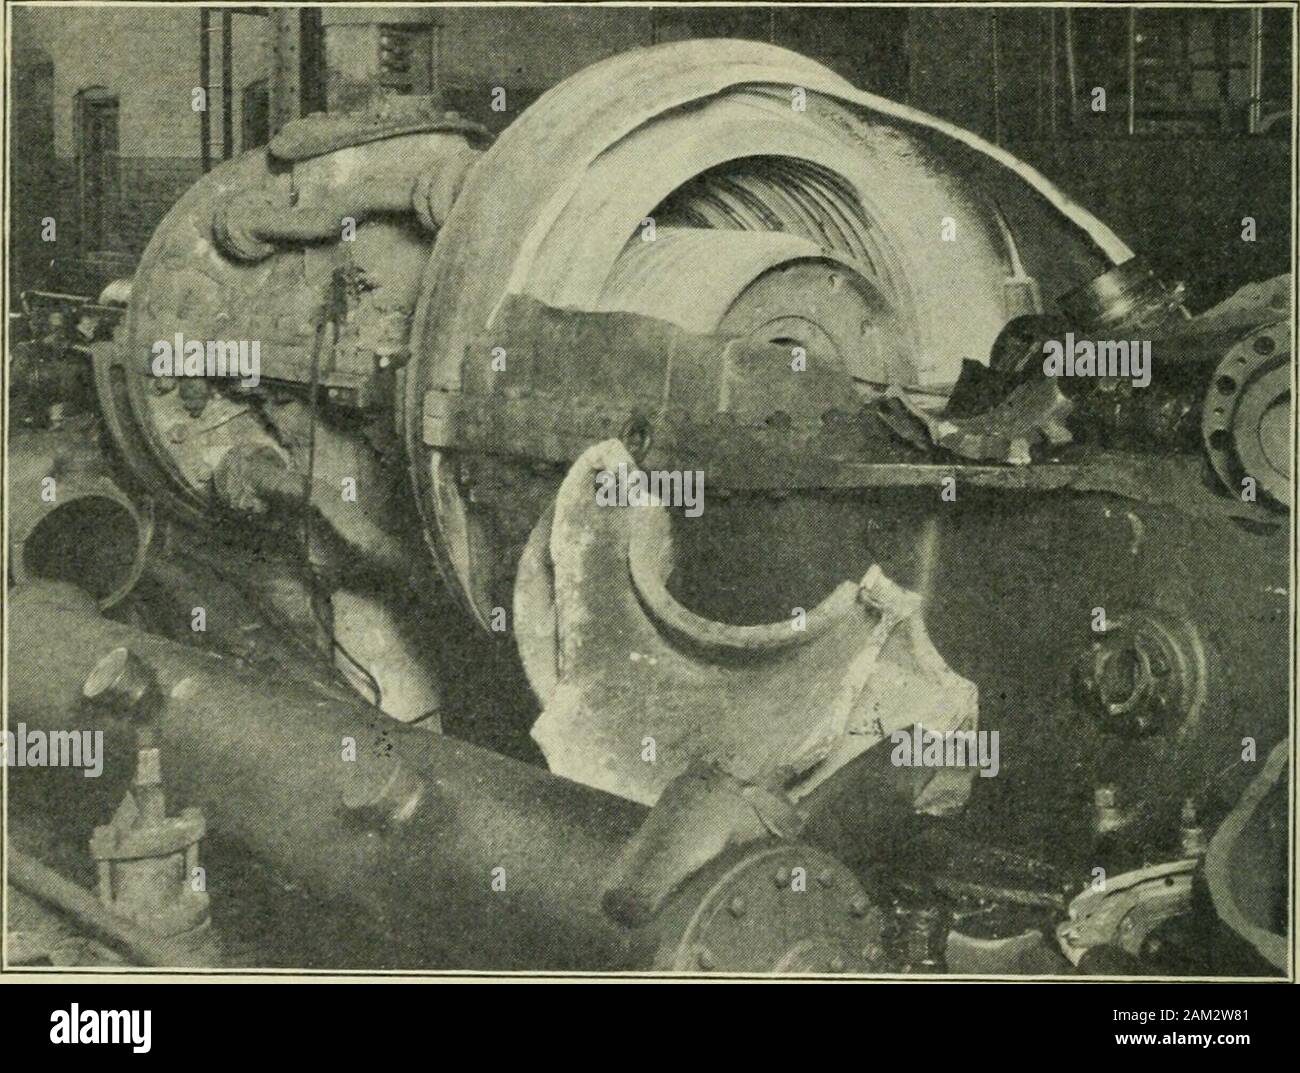 Die Lokomotive. 8 o die Lokomotive Juli, gebrochene Klinge Wracks Turbo- Generator plötzlich Brechen des Blades, wahrscheinlich durch die Slug von  watercoming durch mit dem Dampf, führte zur Zerstörung einer 4.000 kw.  Turbo-Generator